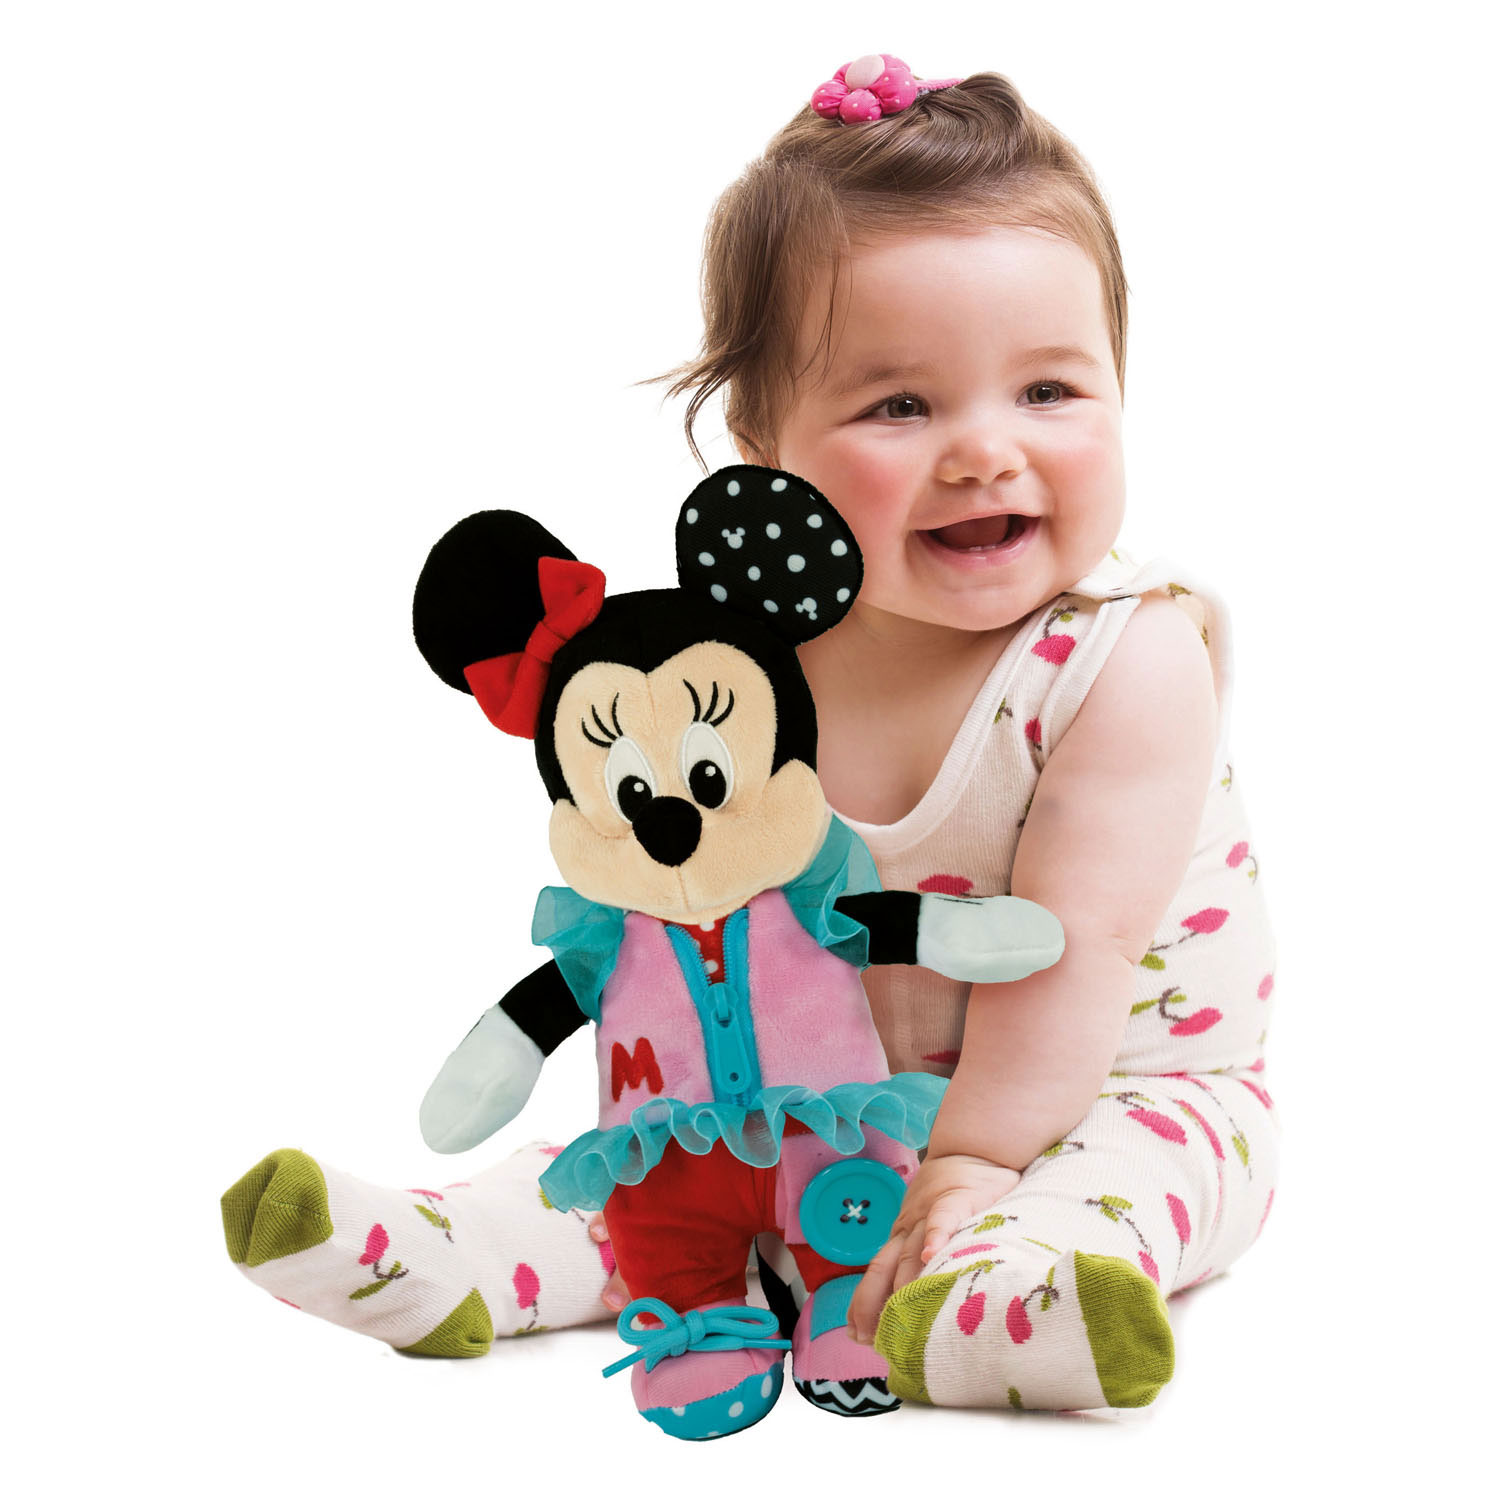 Clementoni Baby Disney Minnie Mouse en peluche